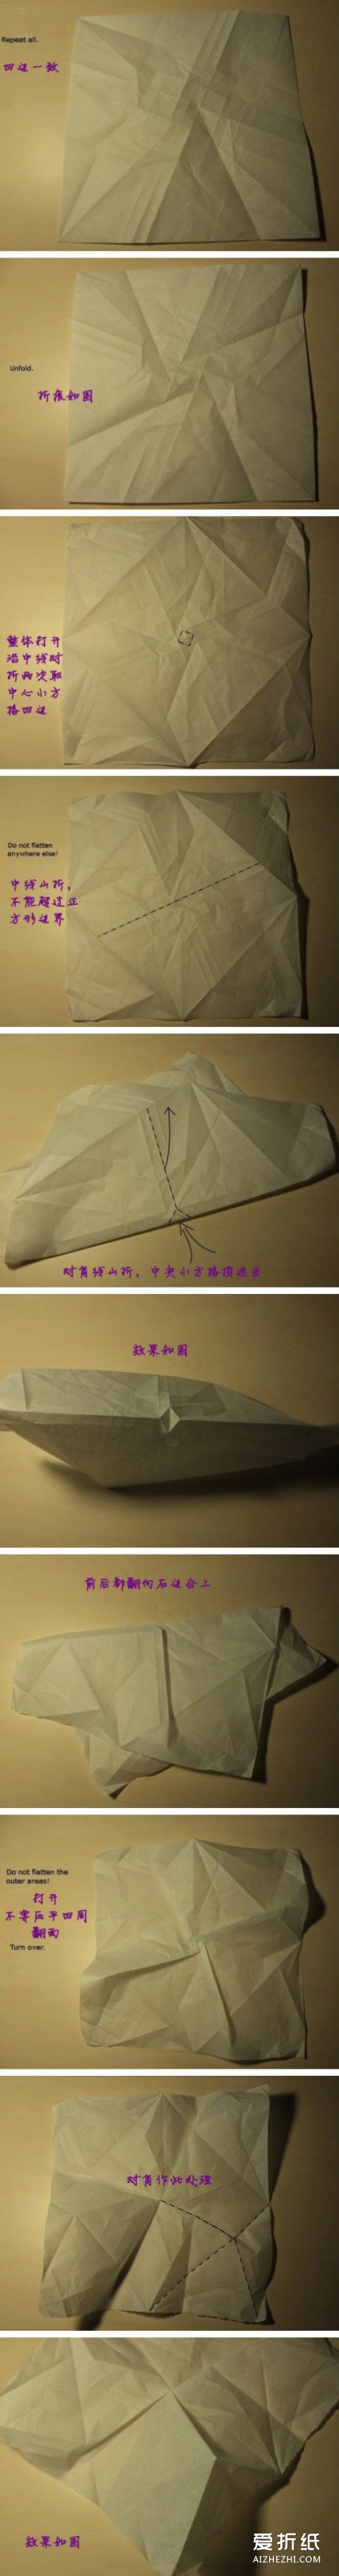 折玫瑰花的步骤图解 玫瑰的折纸方法过程- www.aizhezhi.com